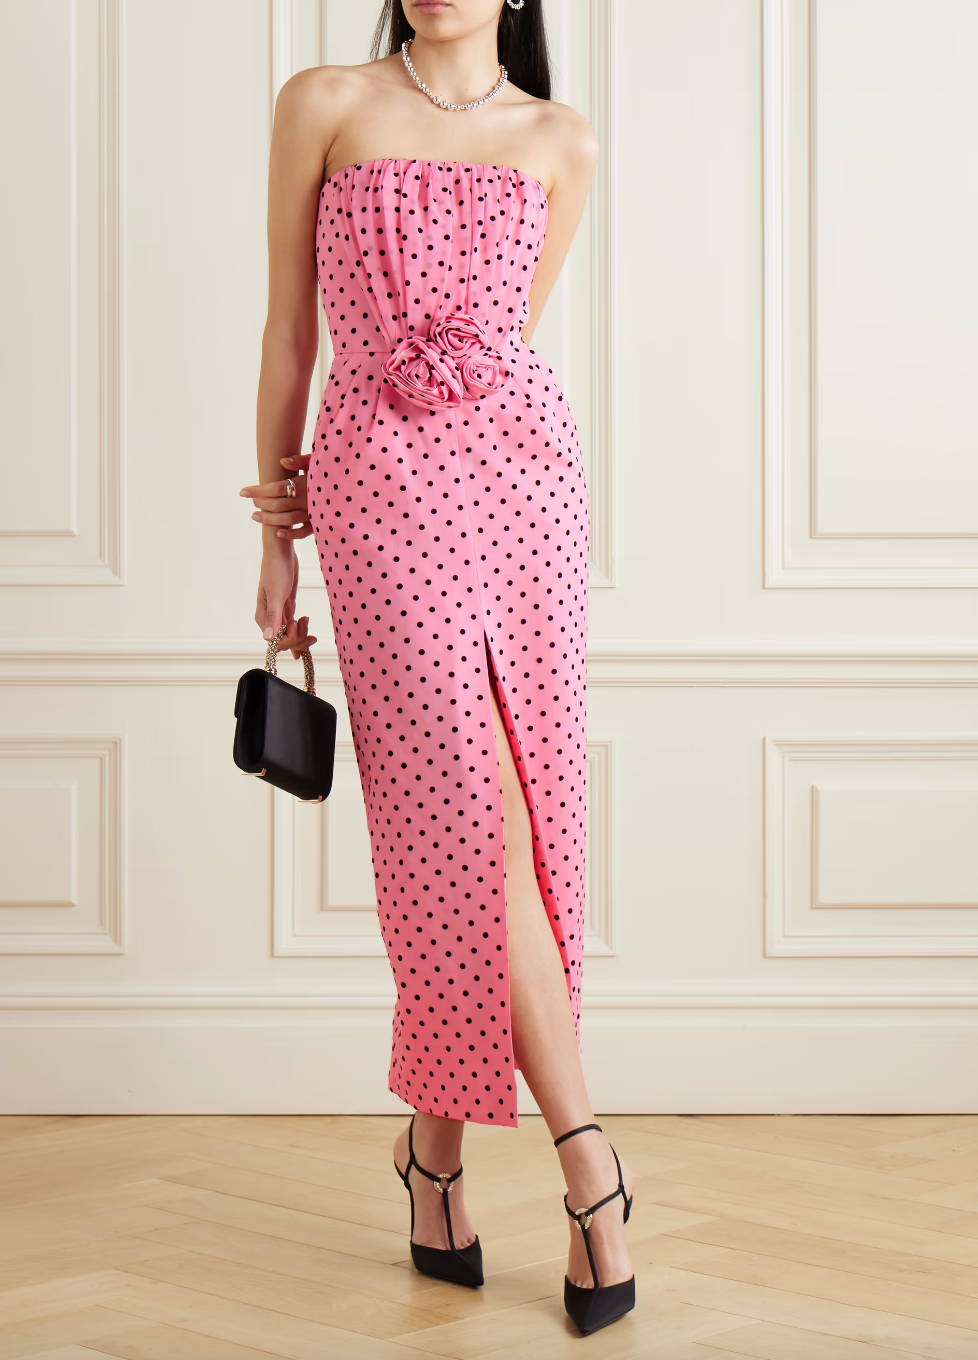 Erin Lichy's Pink Polka Dot Dress